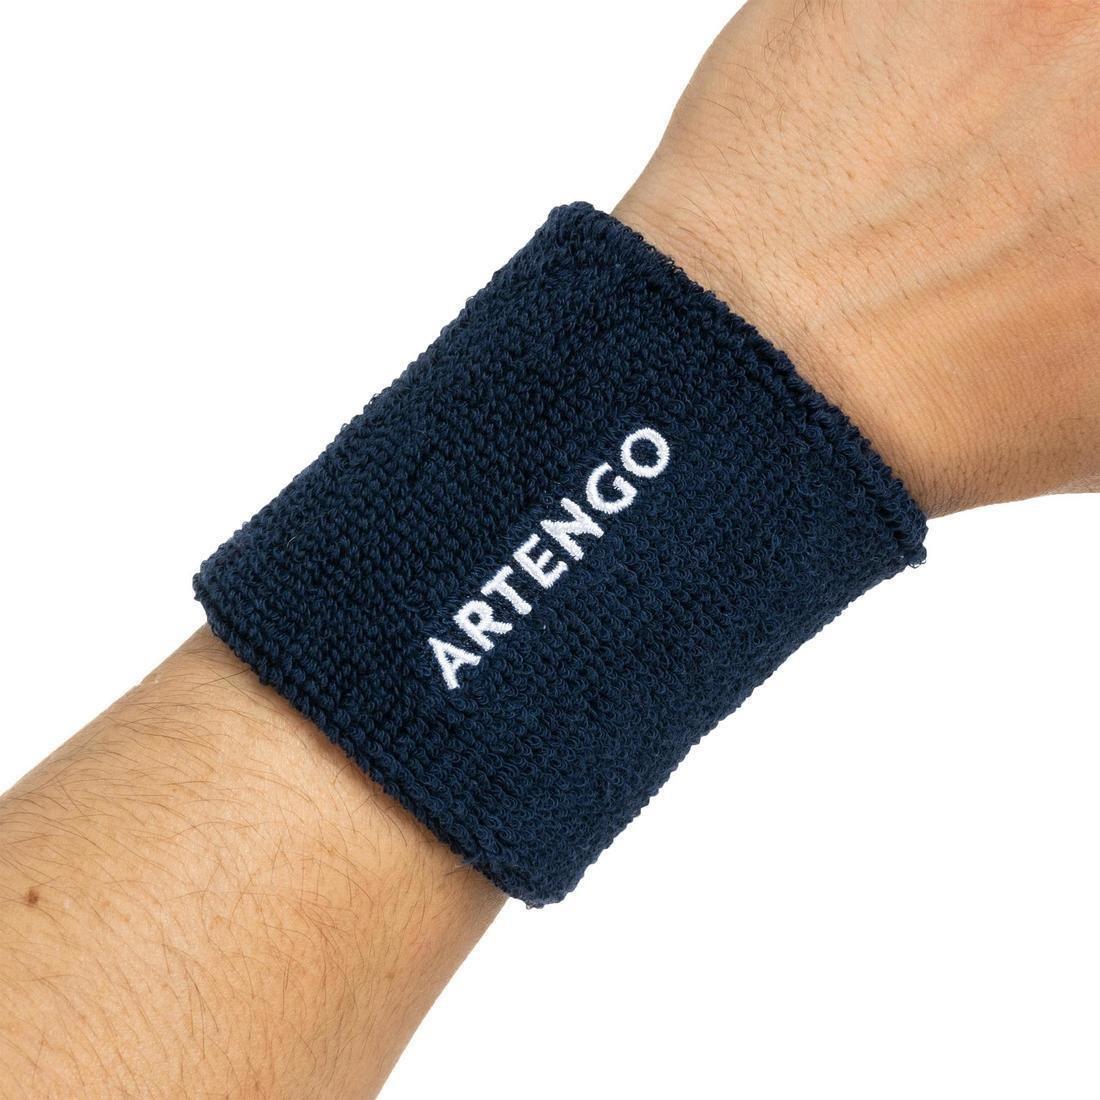 ARTENGO - Tennis Wristband Tp 100, White